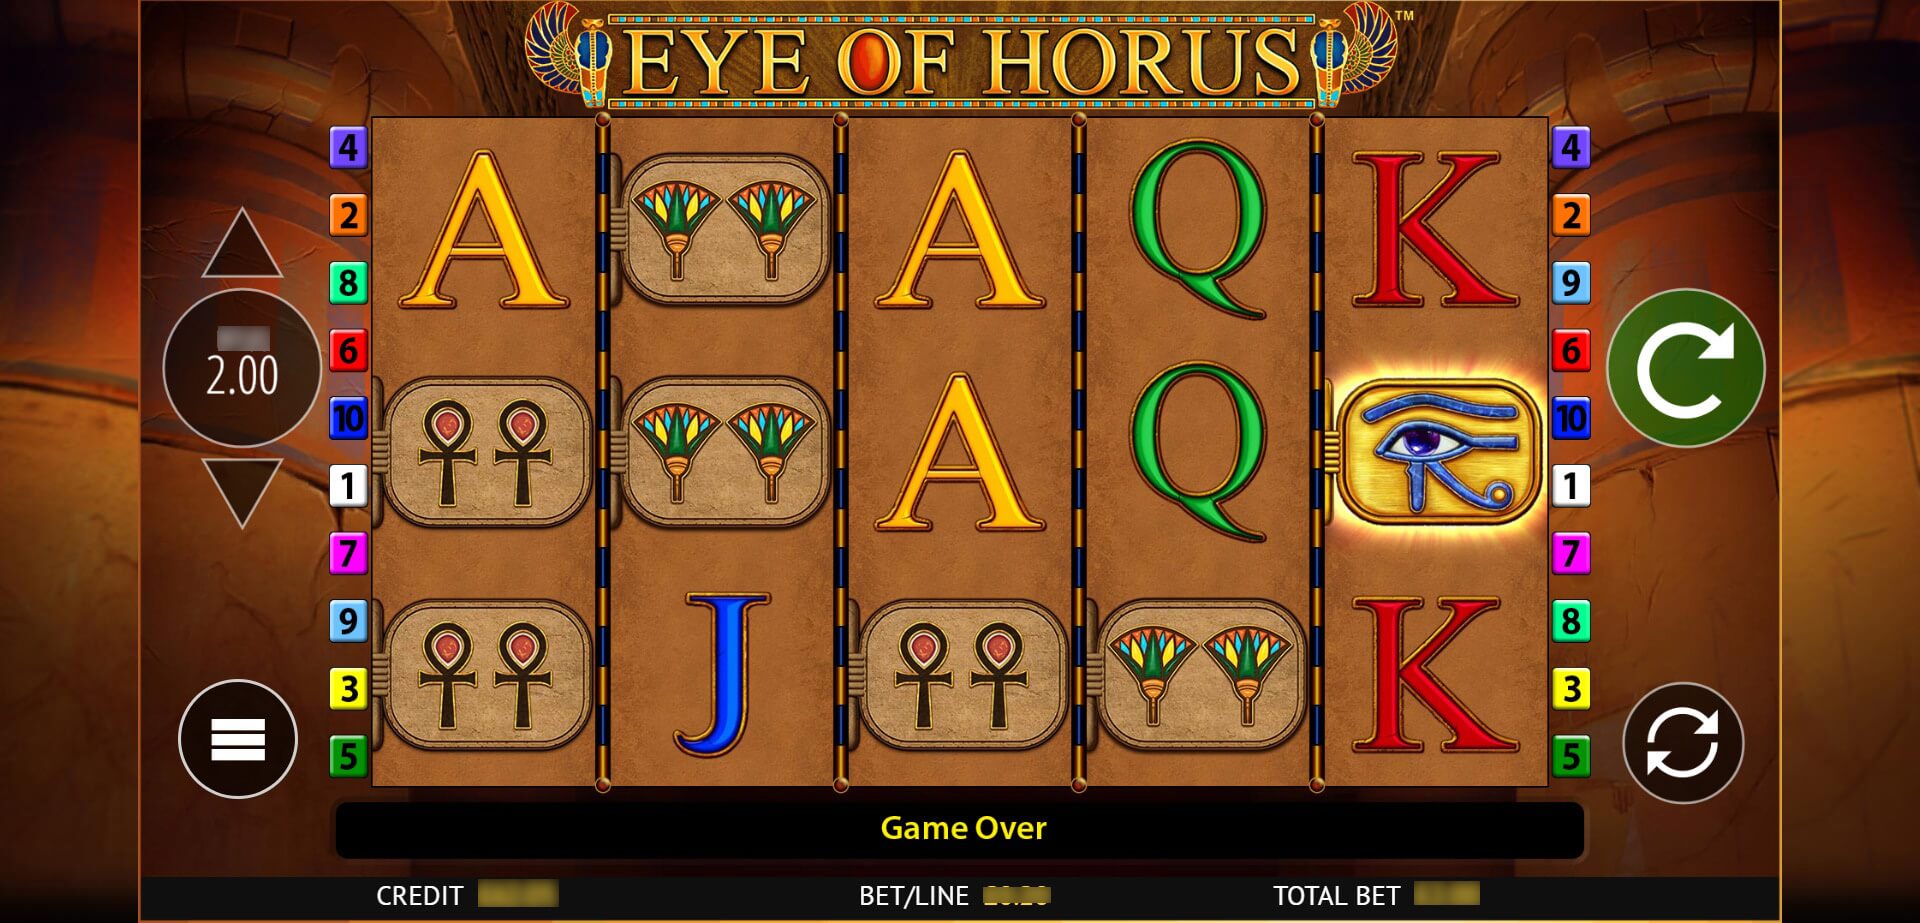 eye of horus by reel time gaming